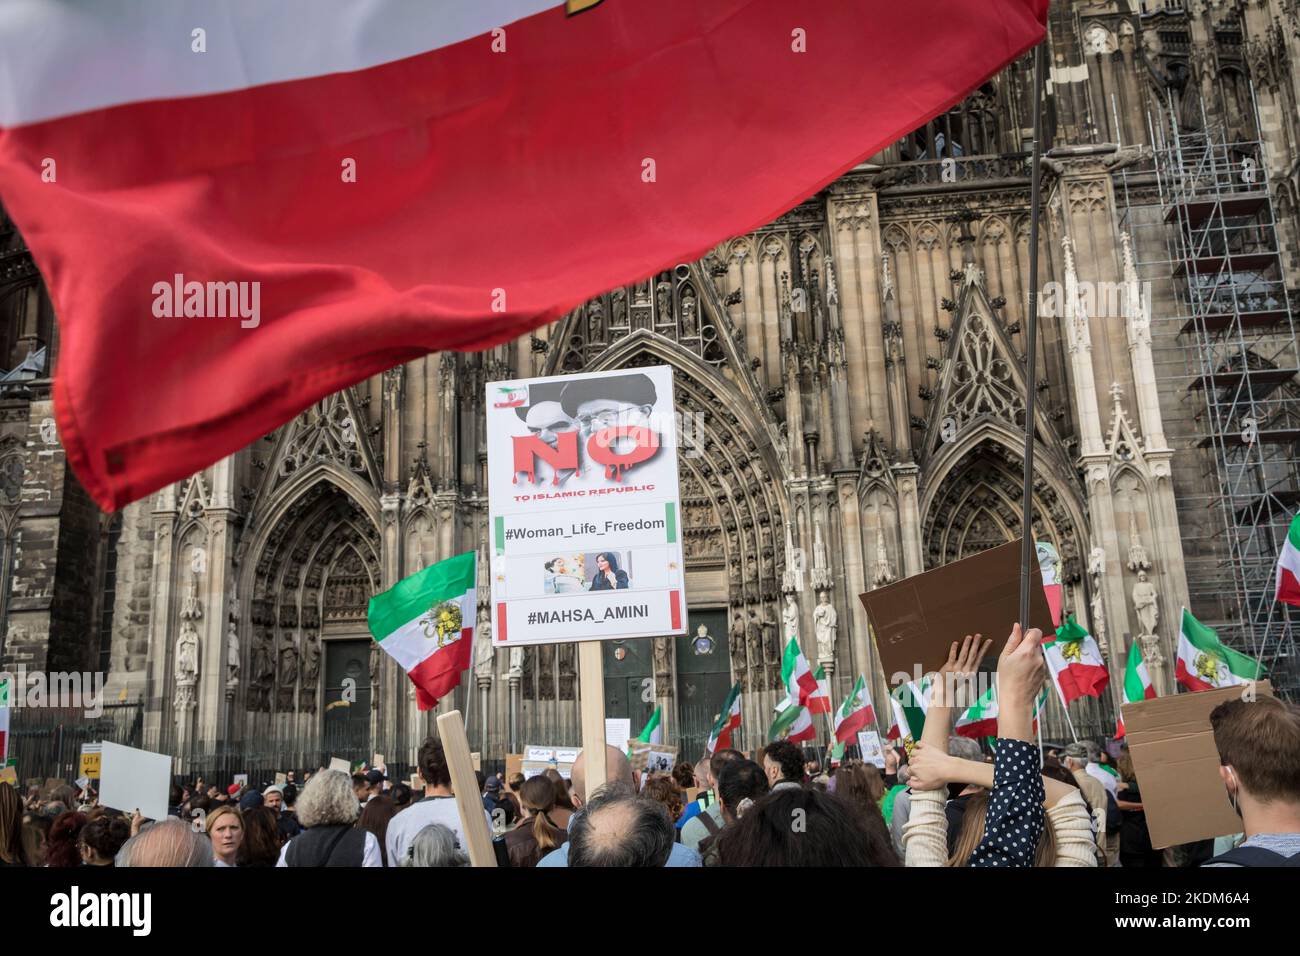 Manifestation et rassemblement en solidarité avec les femmes protestataires en Iran, slogan de protestation «femme. La vie. Freedom.', Cologne, Allemagne, 29.10.2022. Démonstrat Banque D'Images